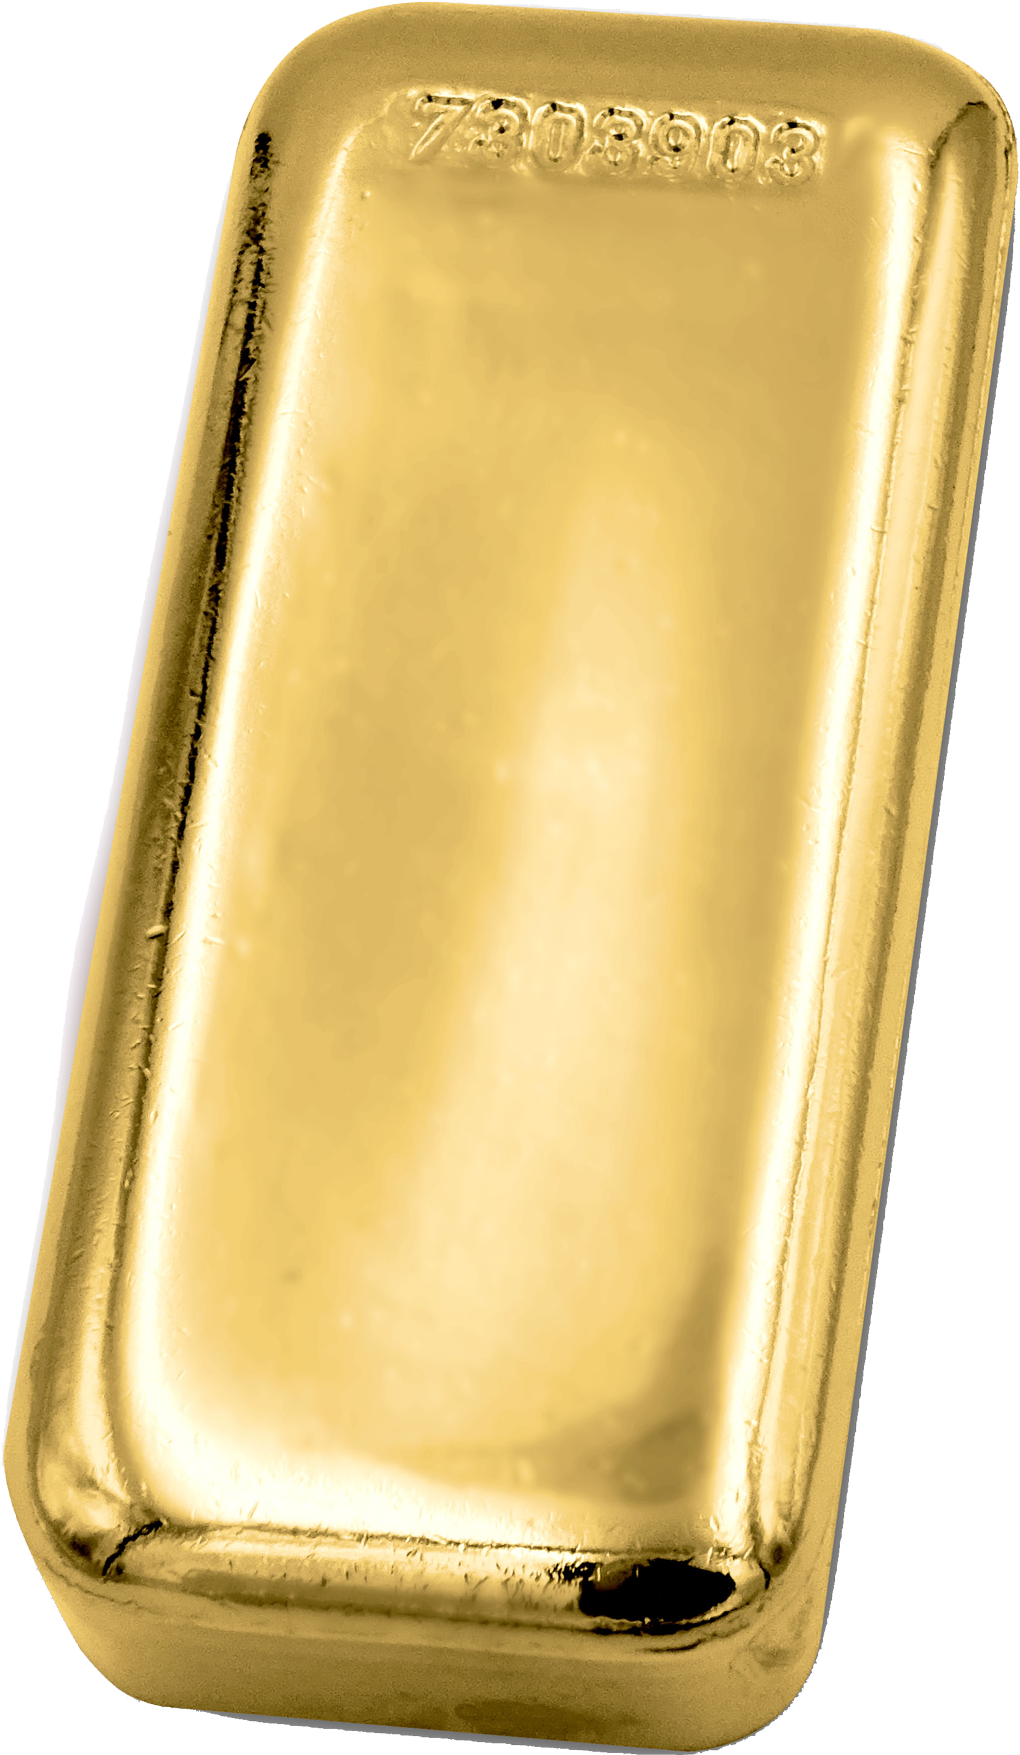 Dreifacher Flaschenöffner in pfiffiger Goldbarrenform.